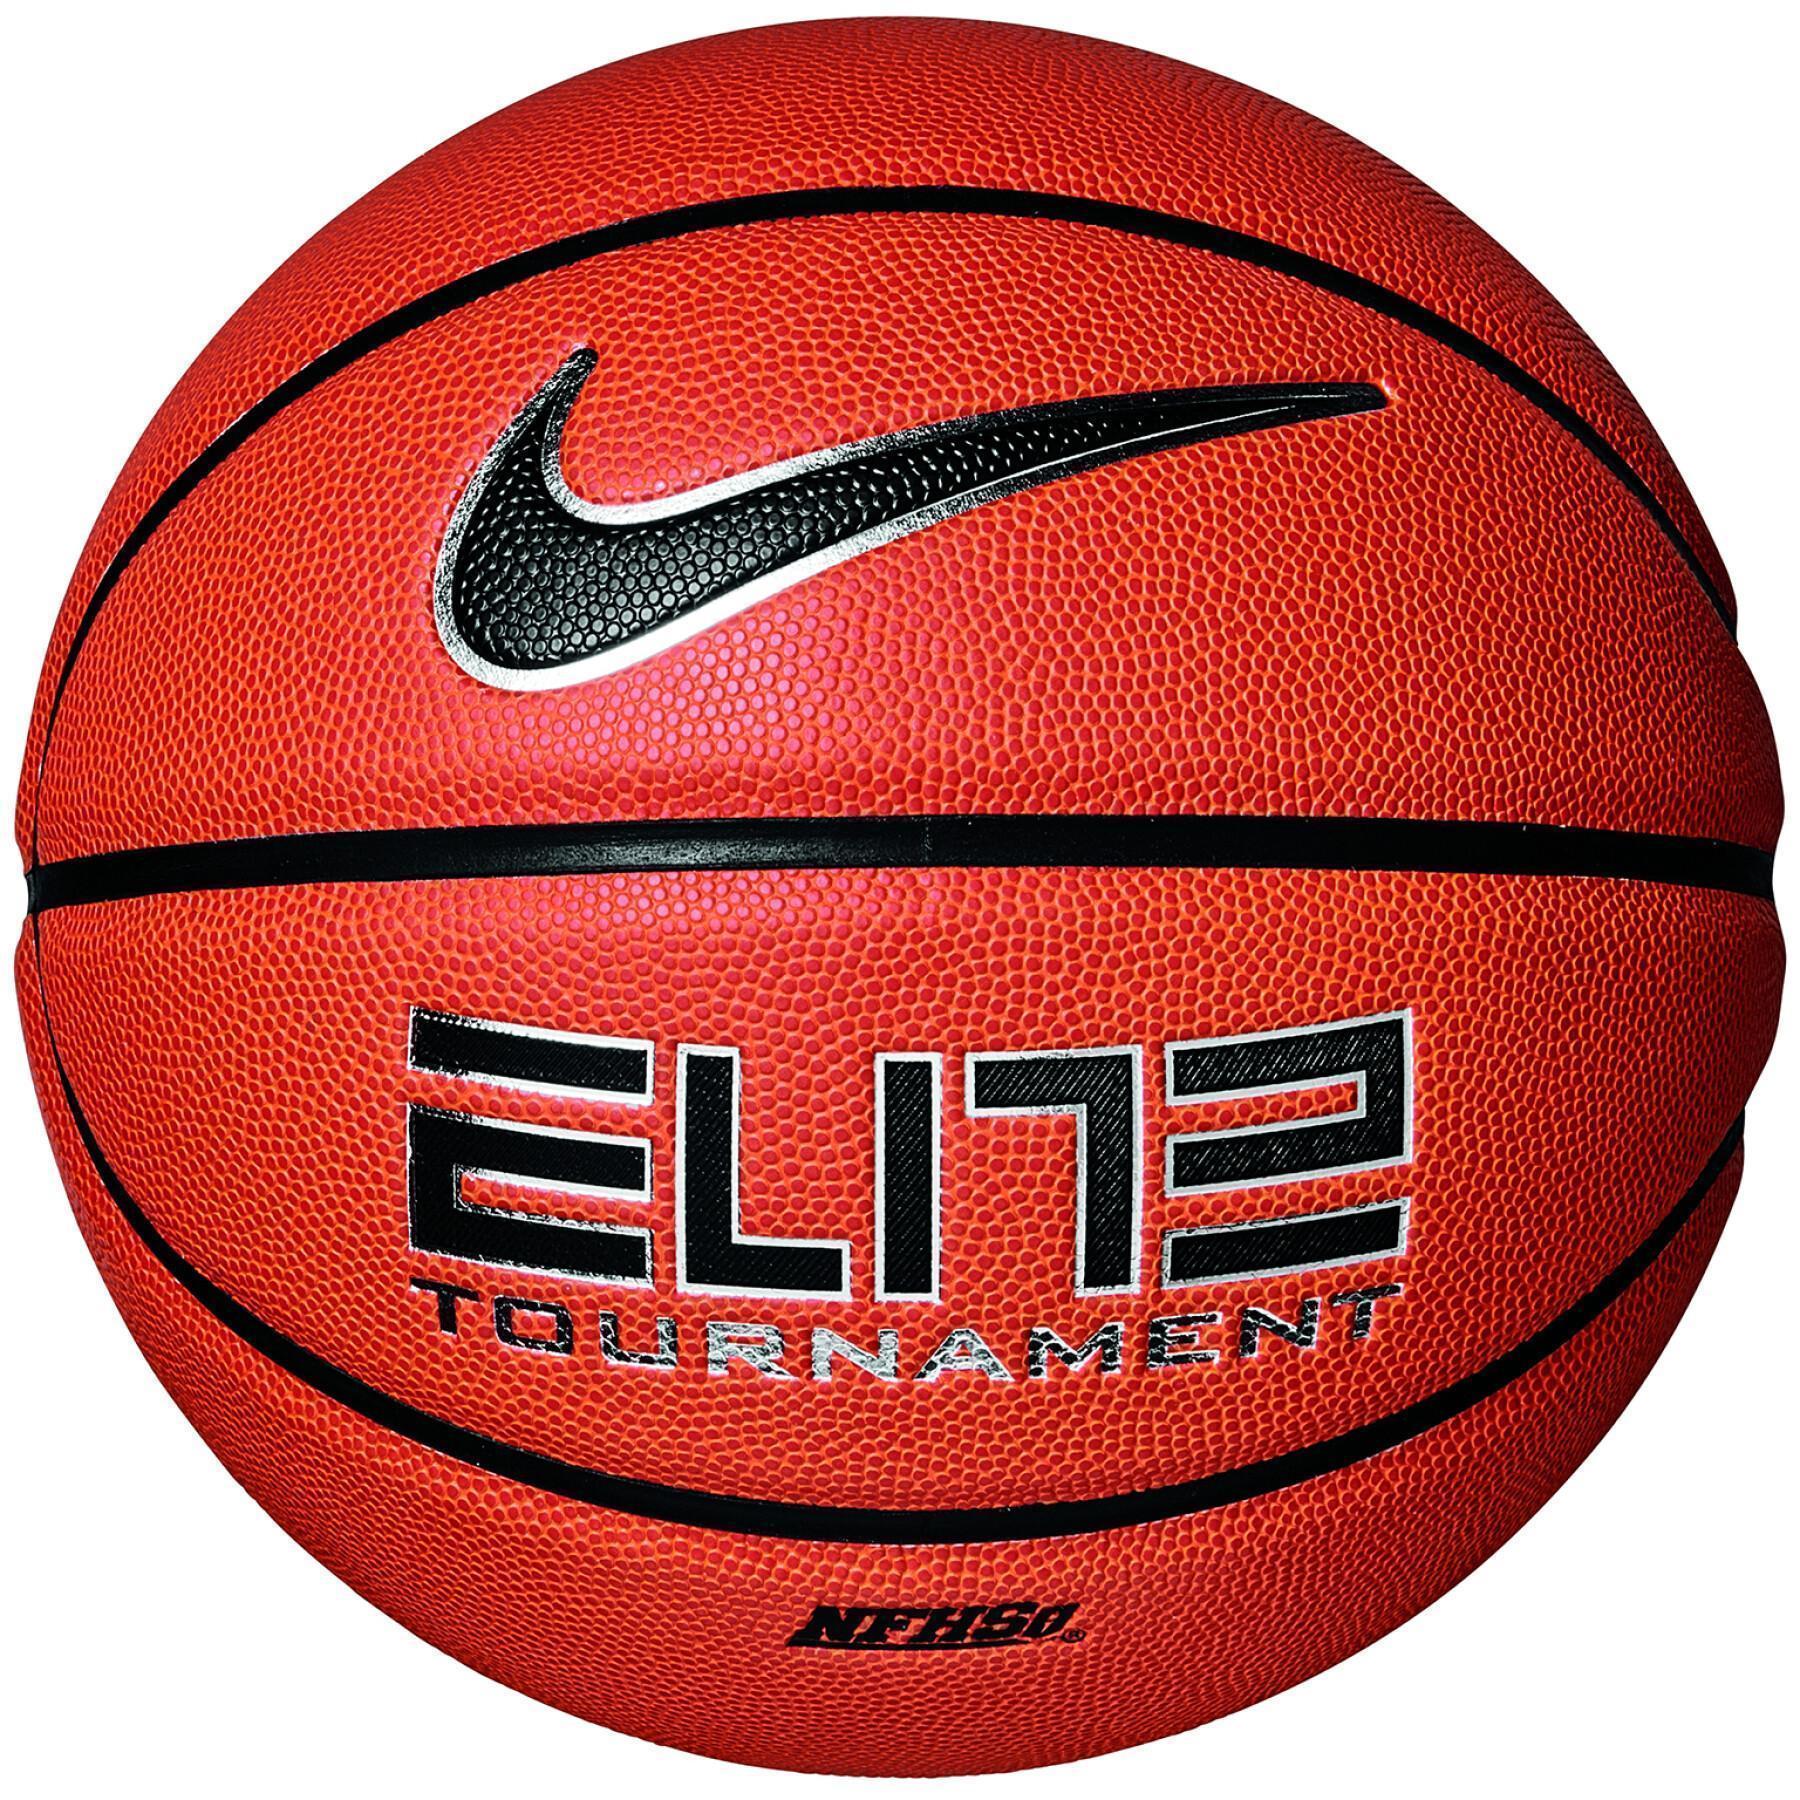 Ballon Nike elite tournament 8p